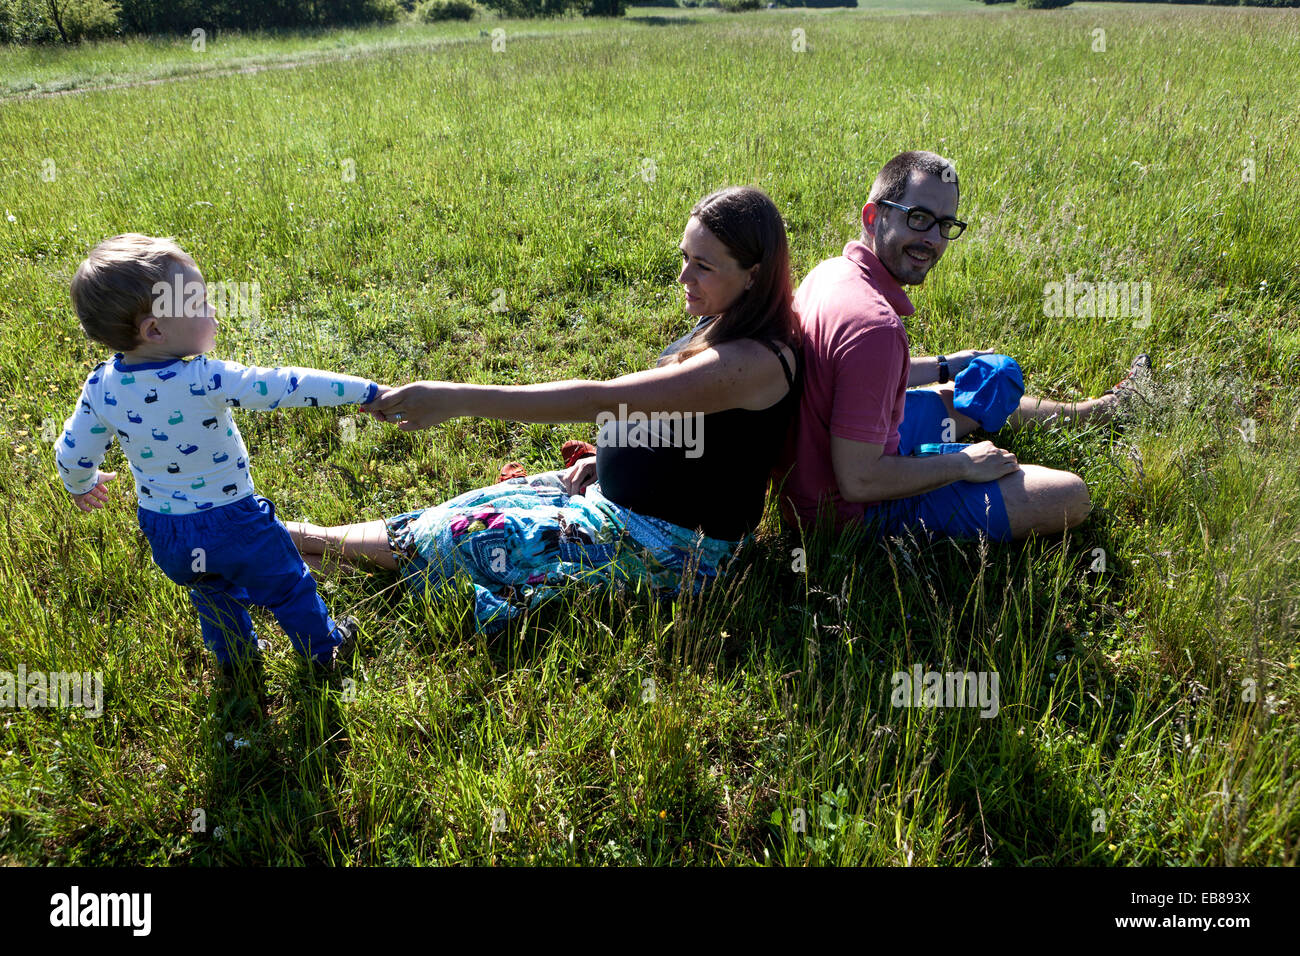 Eine glückliche Familie, eine schwangere Frau mit ihrem Mann und kleiner Junge Zeit miteinander verbringen und spielen in einer Sommerwiese Stockfoto